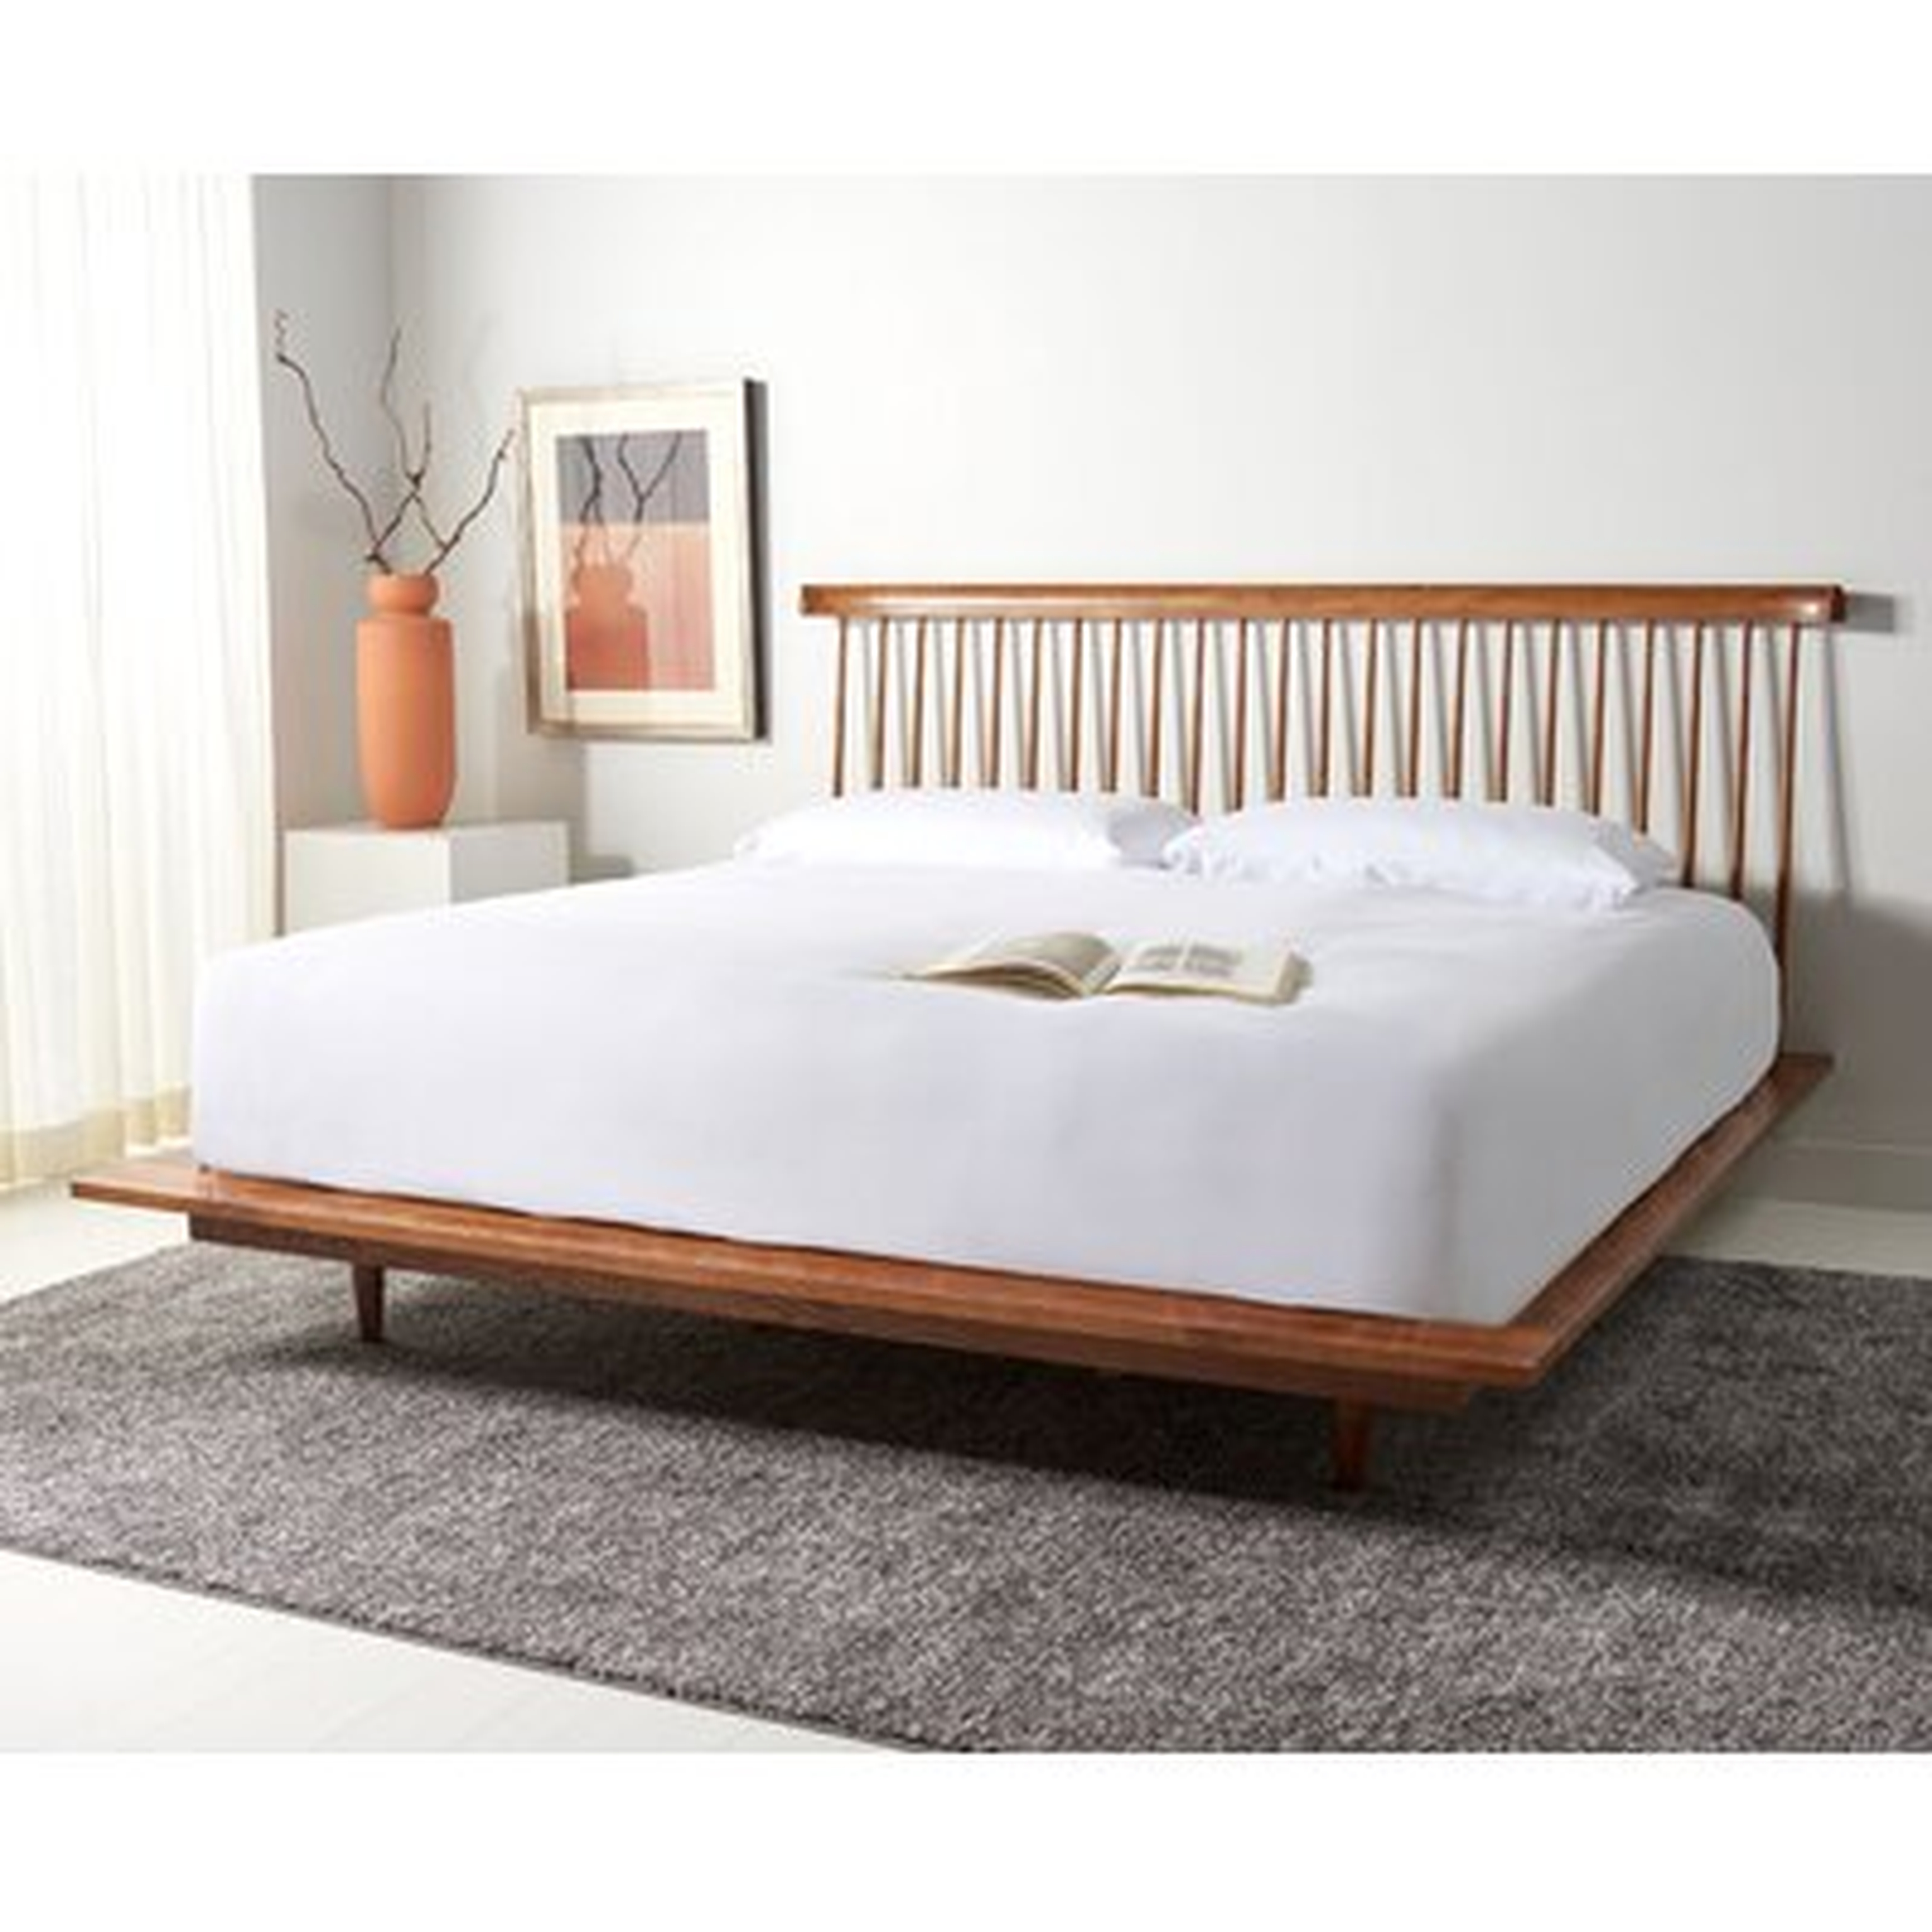 Solid Wood Low Profile Standard Bed - Wayfair